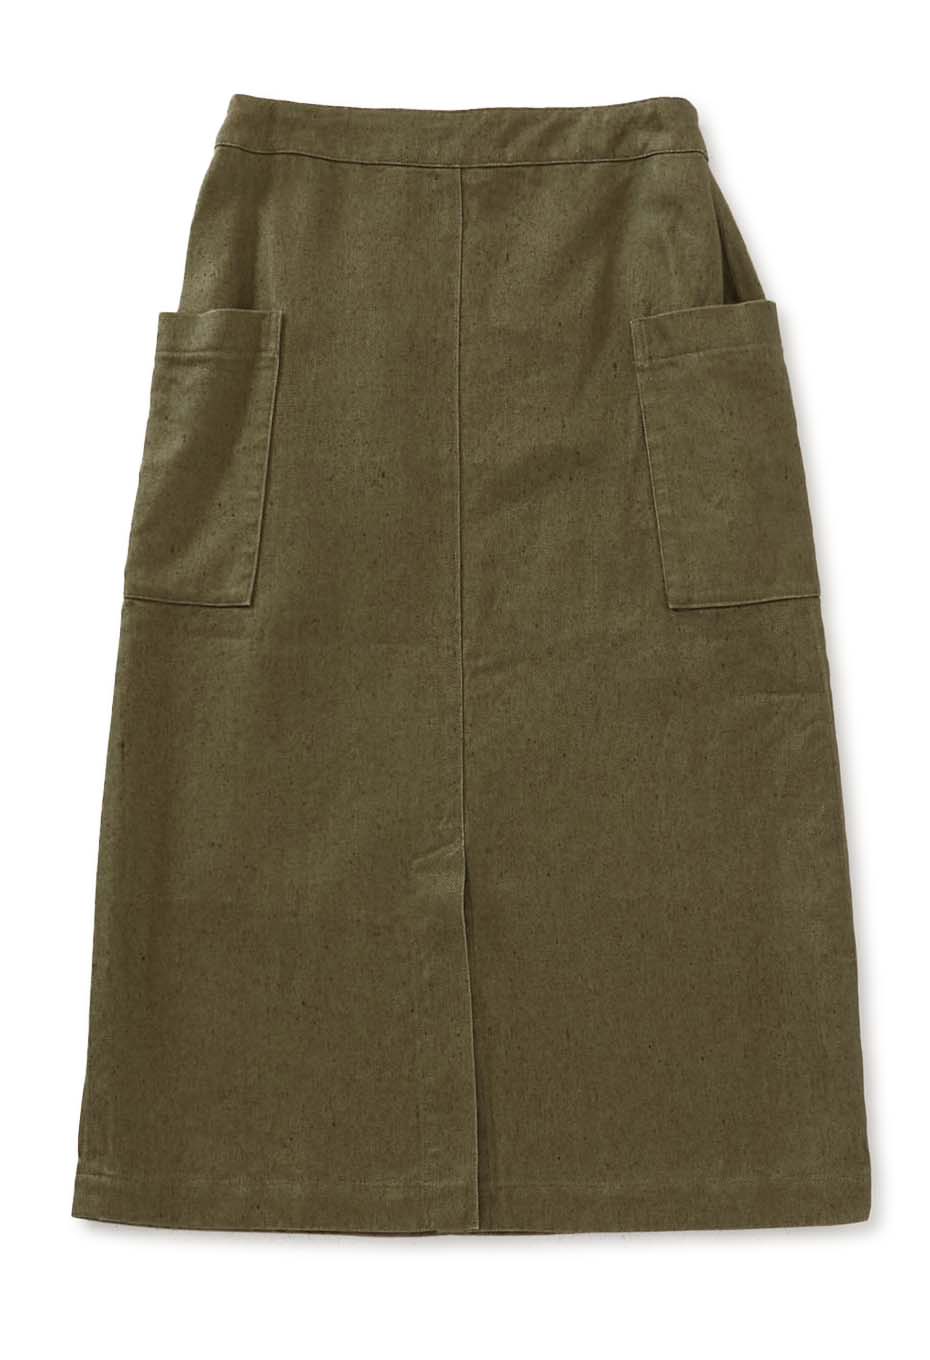 Heavy linen side pocket tight long skirt